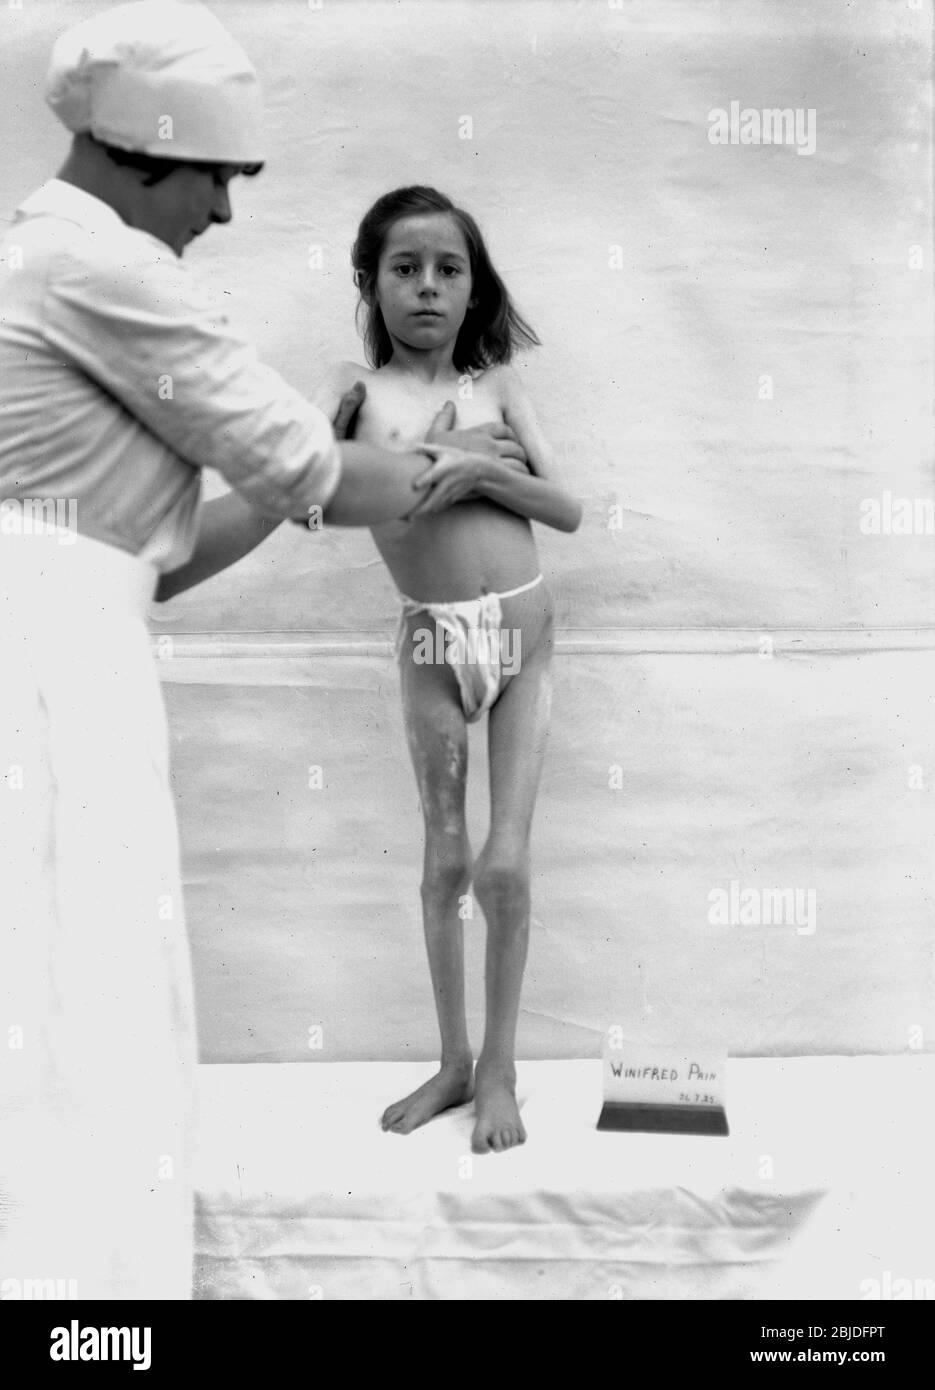 Enfants avec Rickets jeune fille étant traitée à un sanatorium dans Hampshire Angleterre en 1925. Traitement médicament santé malnutrition Grande-Bretagne pauvre soins britanniques nursing1930 luminothérapie Banque D'Images